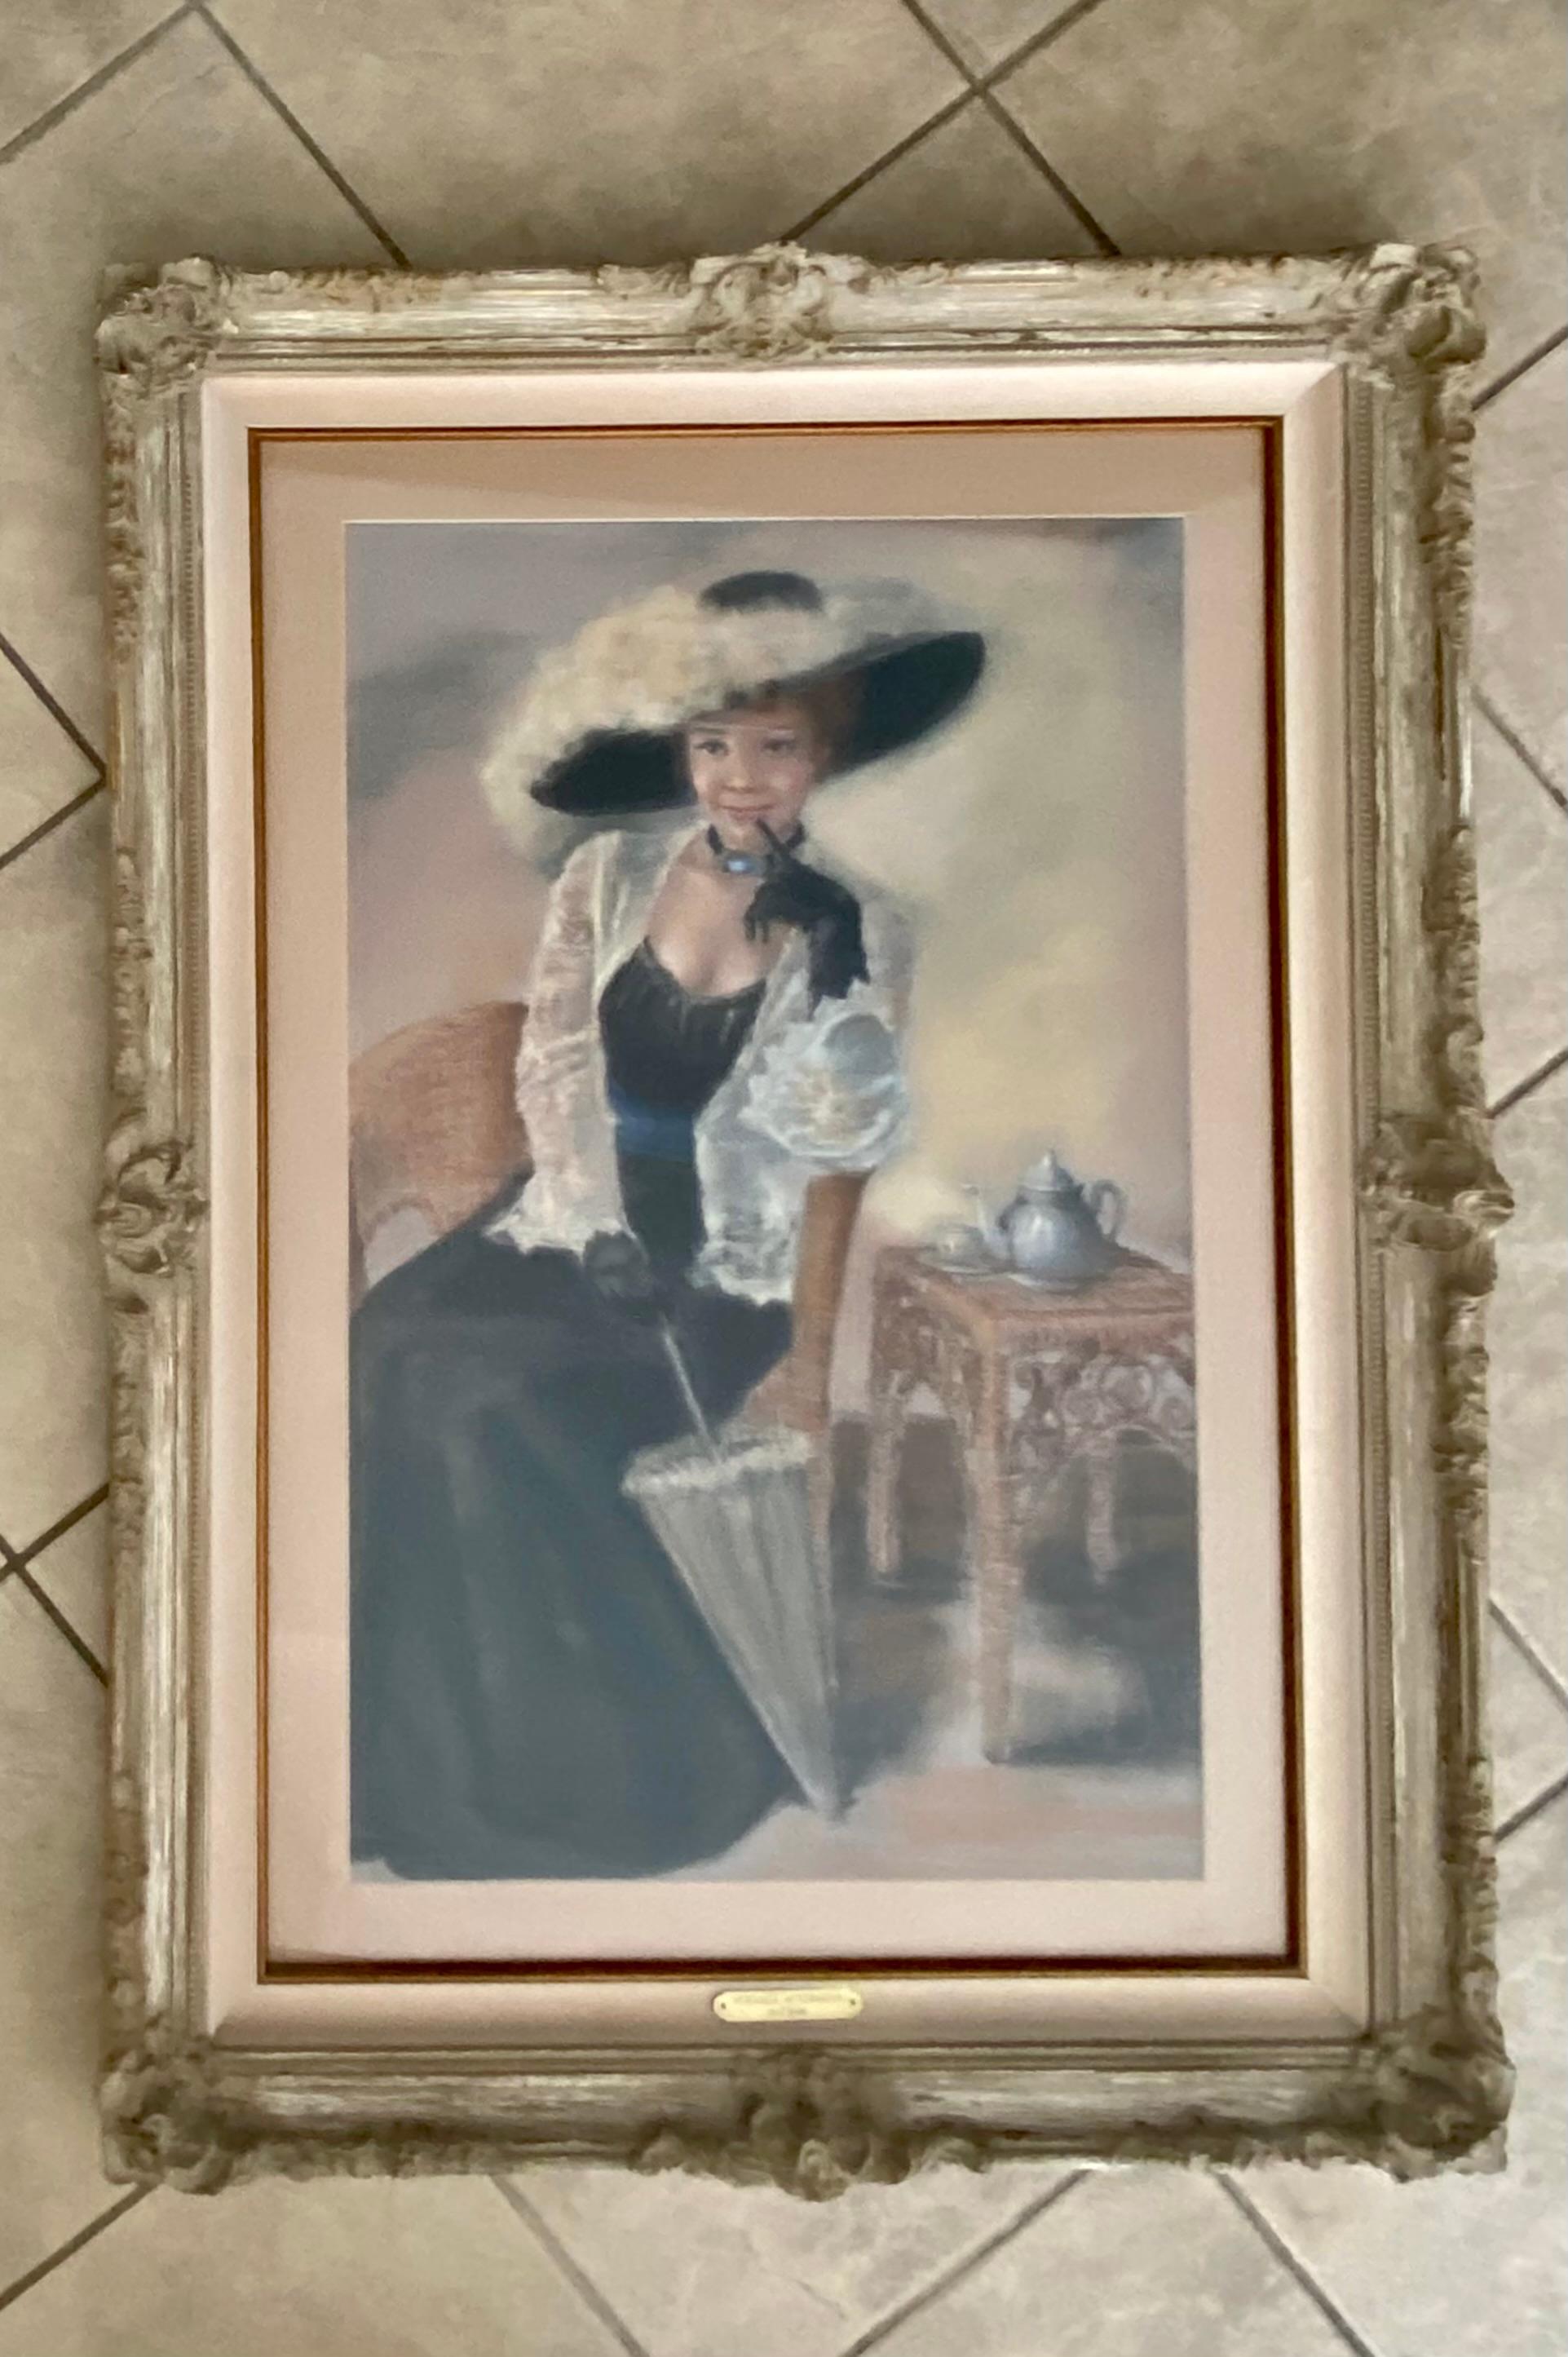 Portrait au pastel d'une jolie femme du début du siècle avec un grand chapeau, réalisé dans les années 1980 par l'artiste F. Sirois. Cadre personnalisé avec couverture en verre et plaque signalétique de l'artiste. La taille de la peinture mesure :